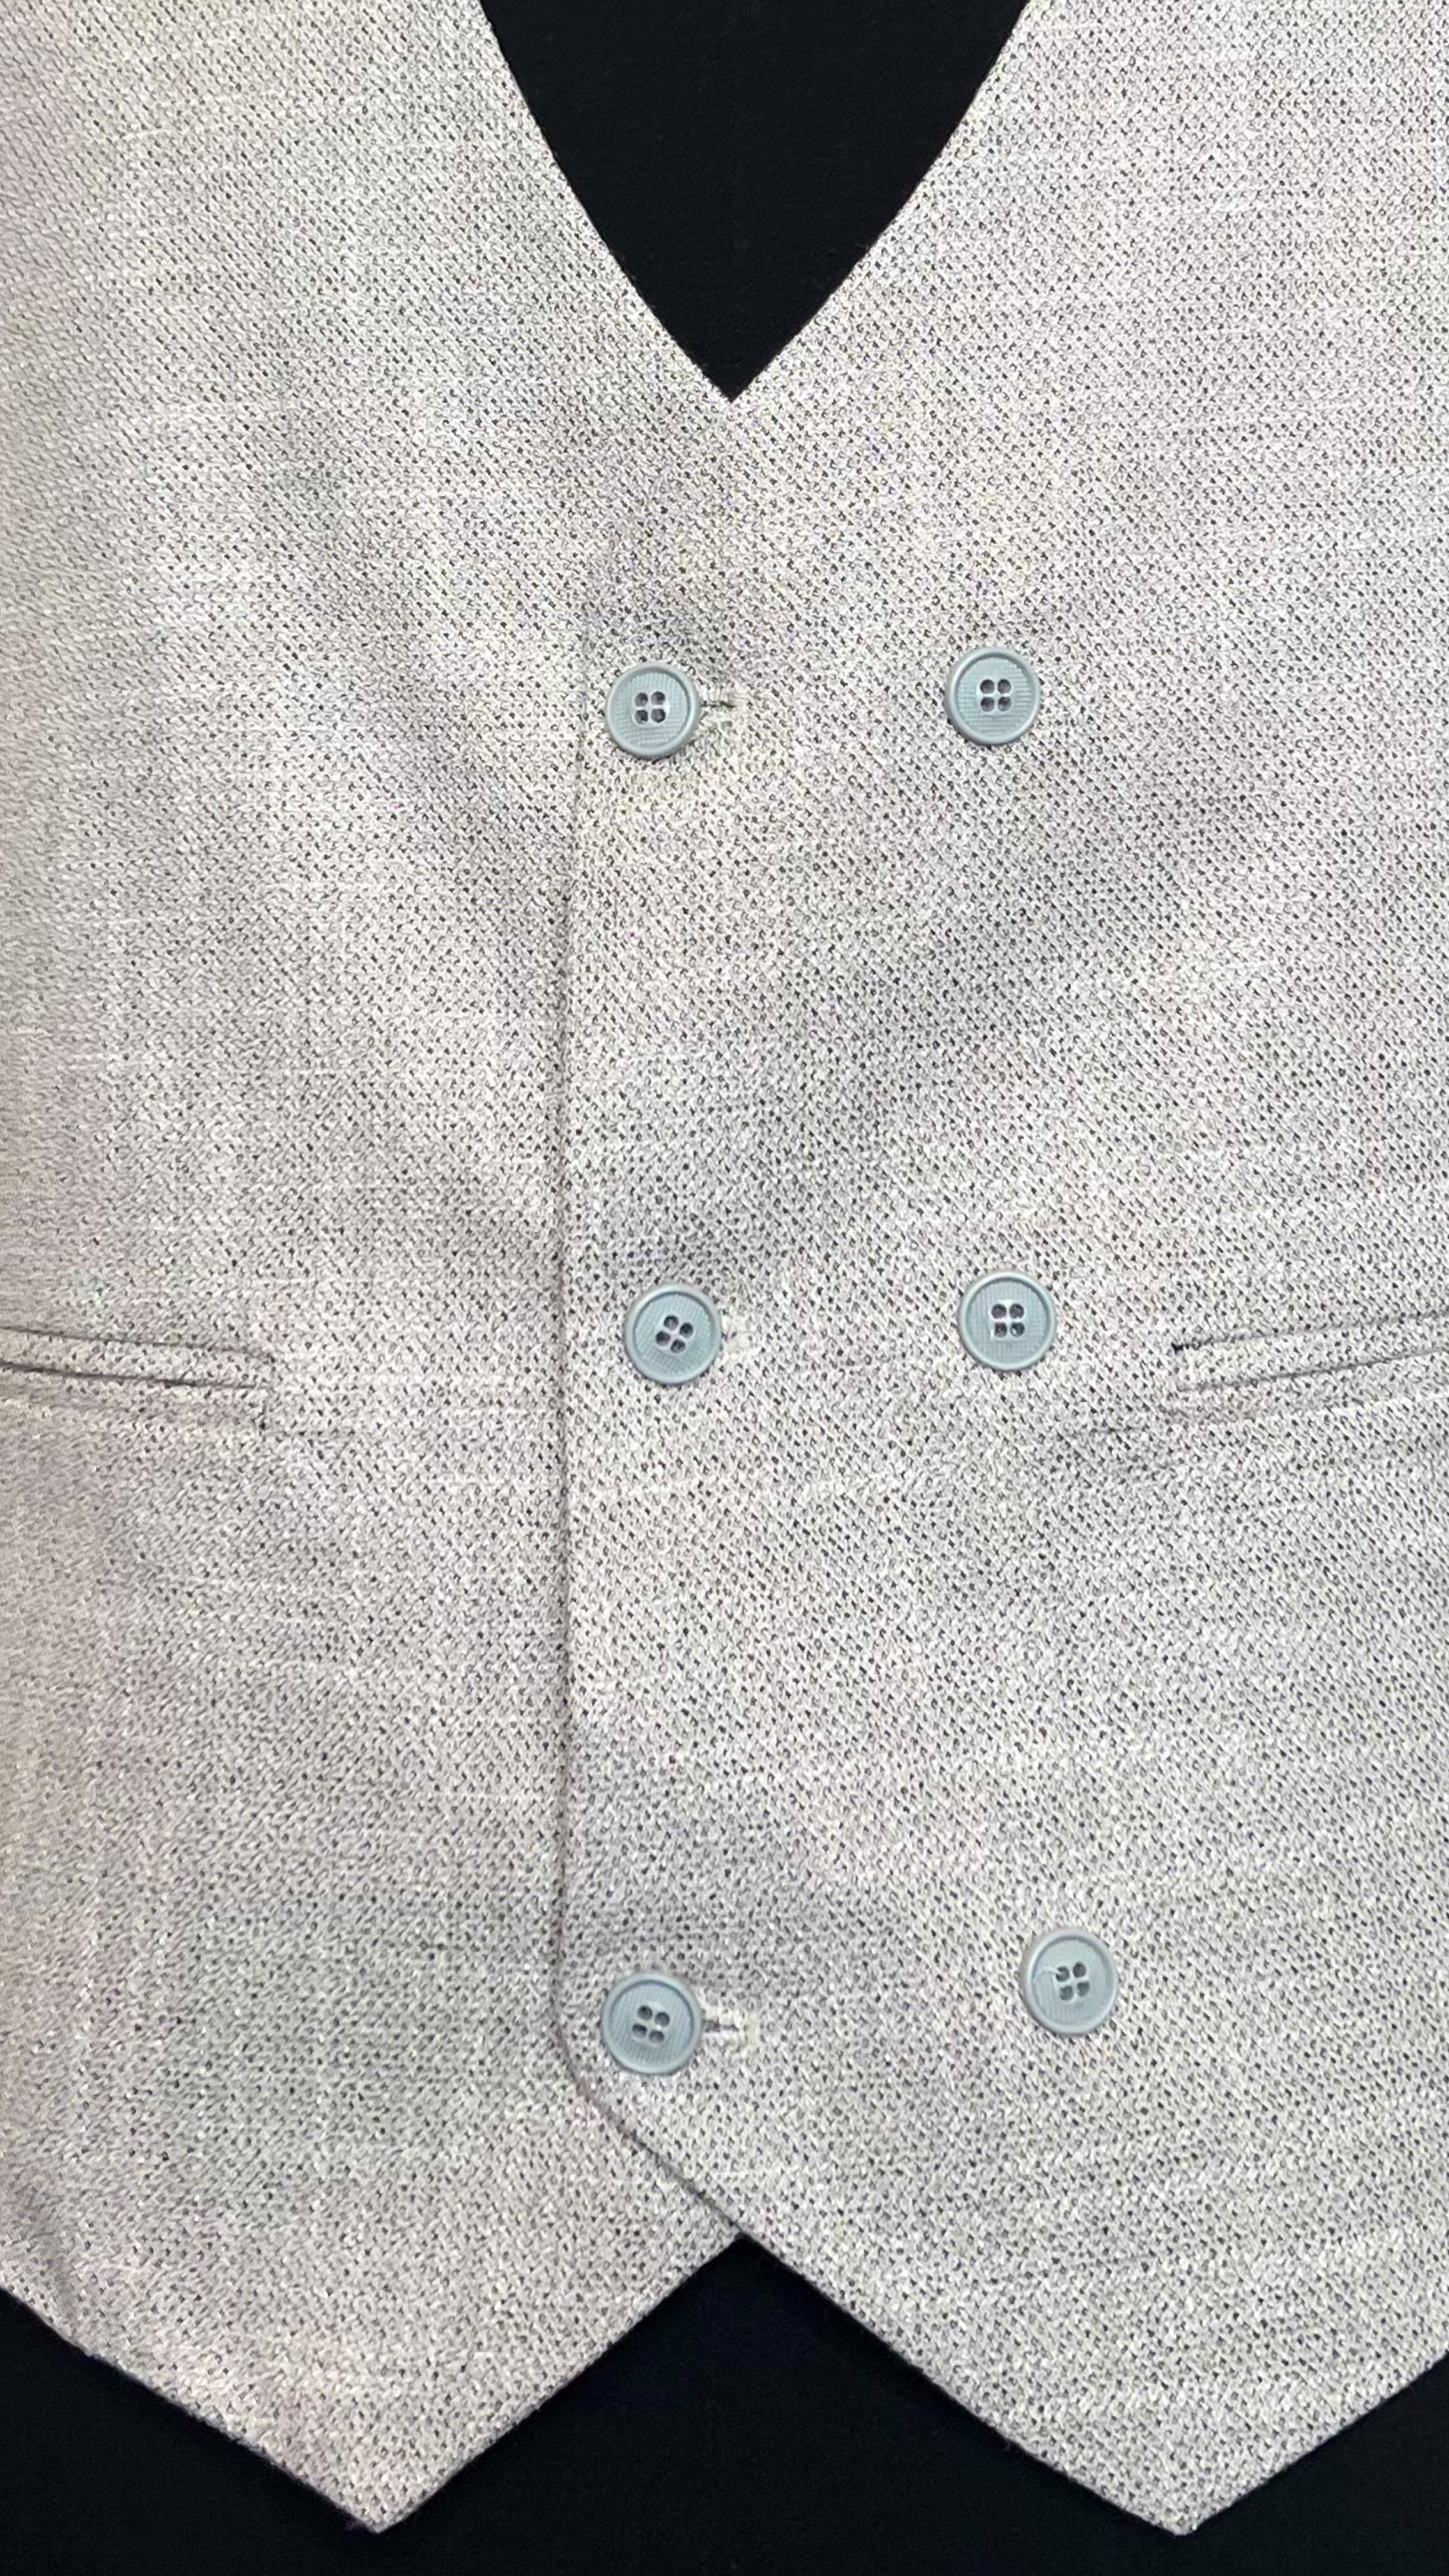 Men's Contemporary Linen-Blend Suit by Vercini